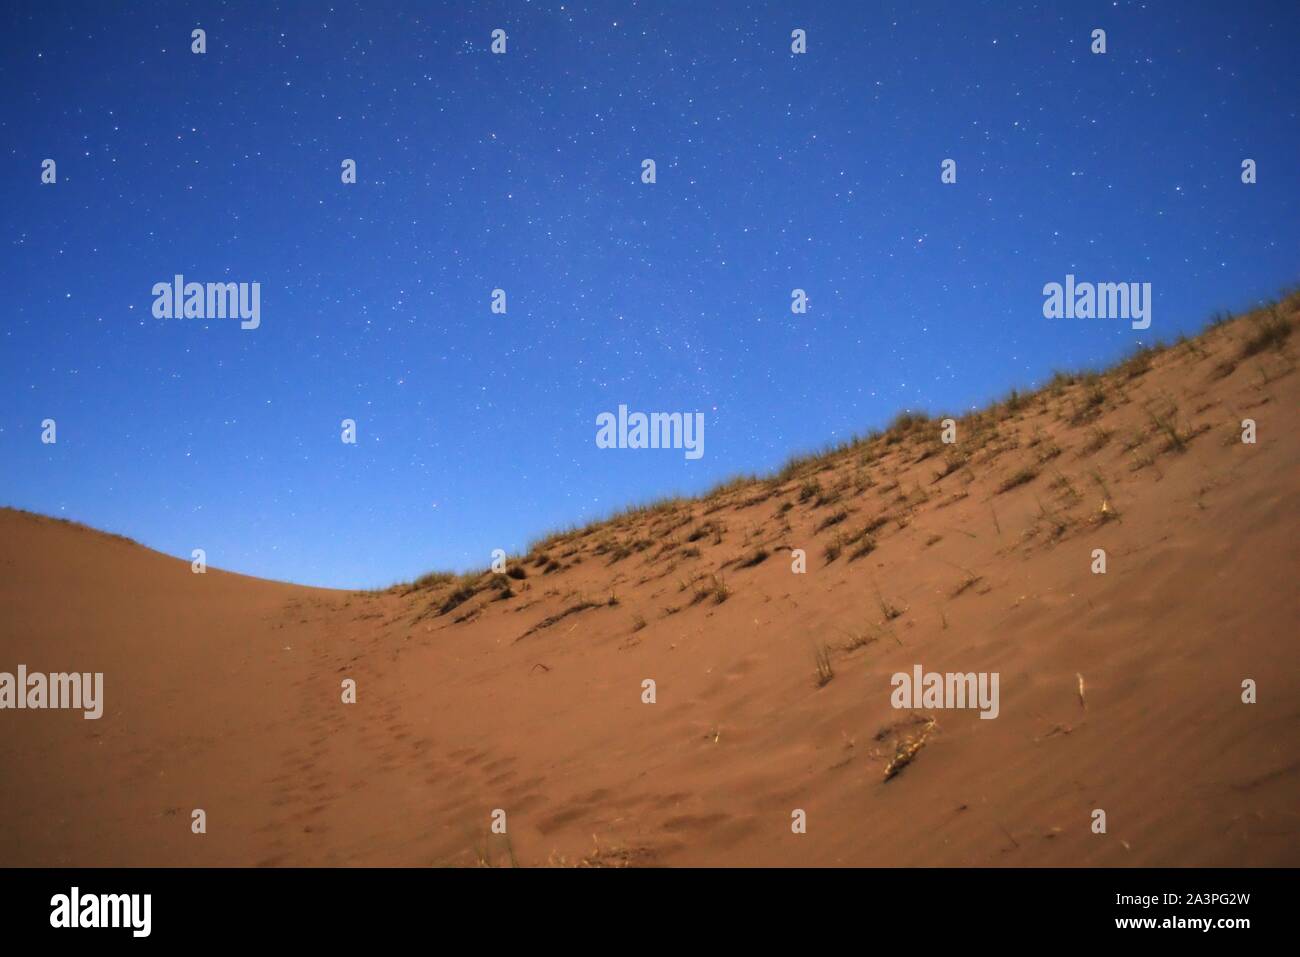 Sonnenuntergang auf der Wüste. Die ersten Sterne können in den tiefen blauen Himmel gesehen werden. Stockfoto